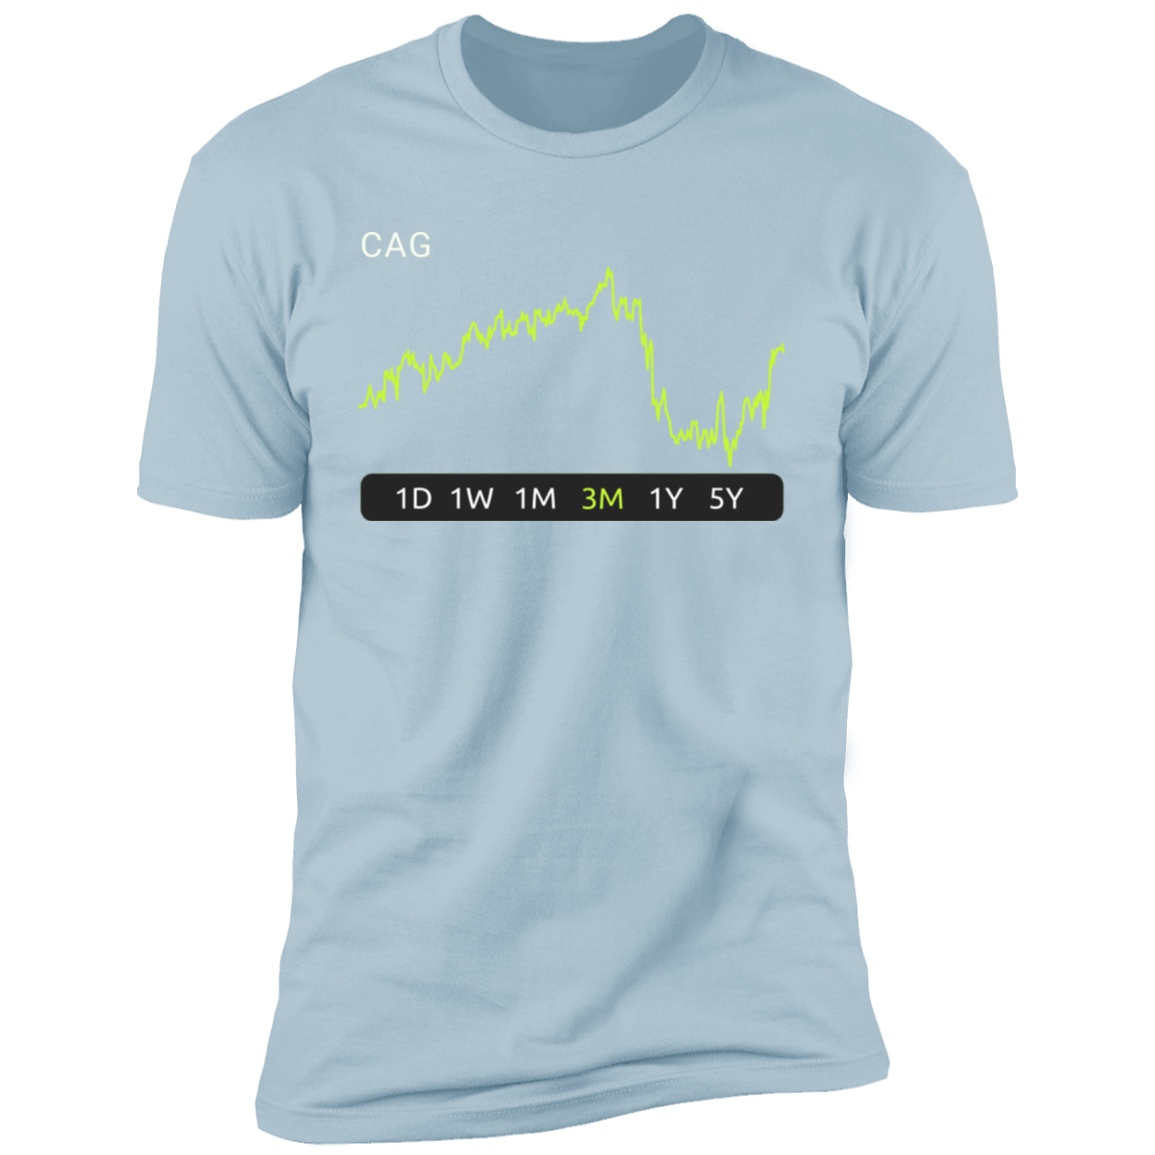 CAG Stock 3m Premium T-Shirt